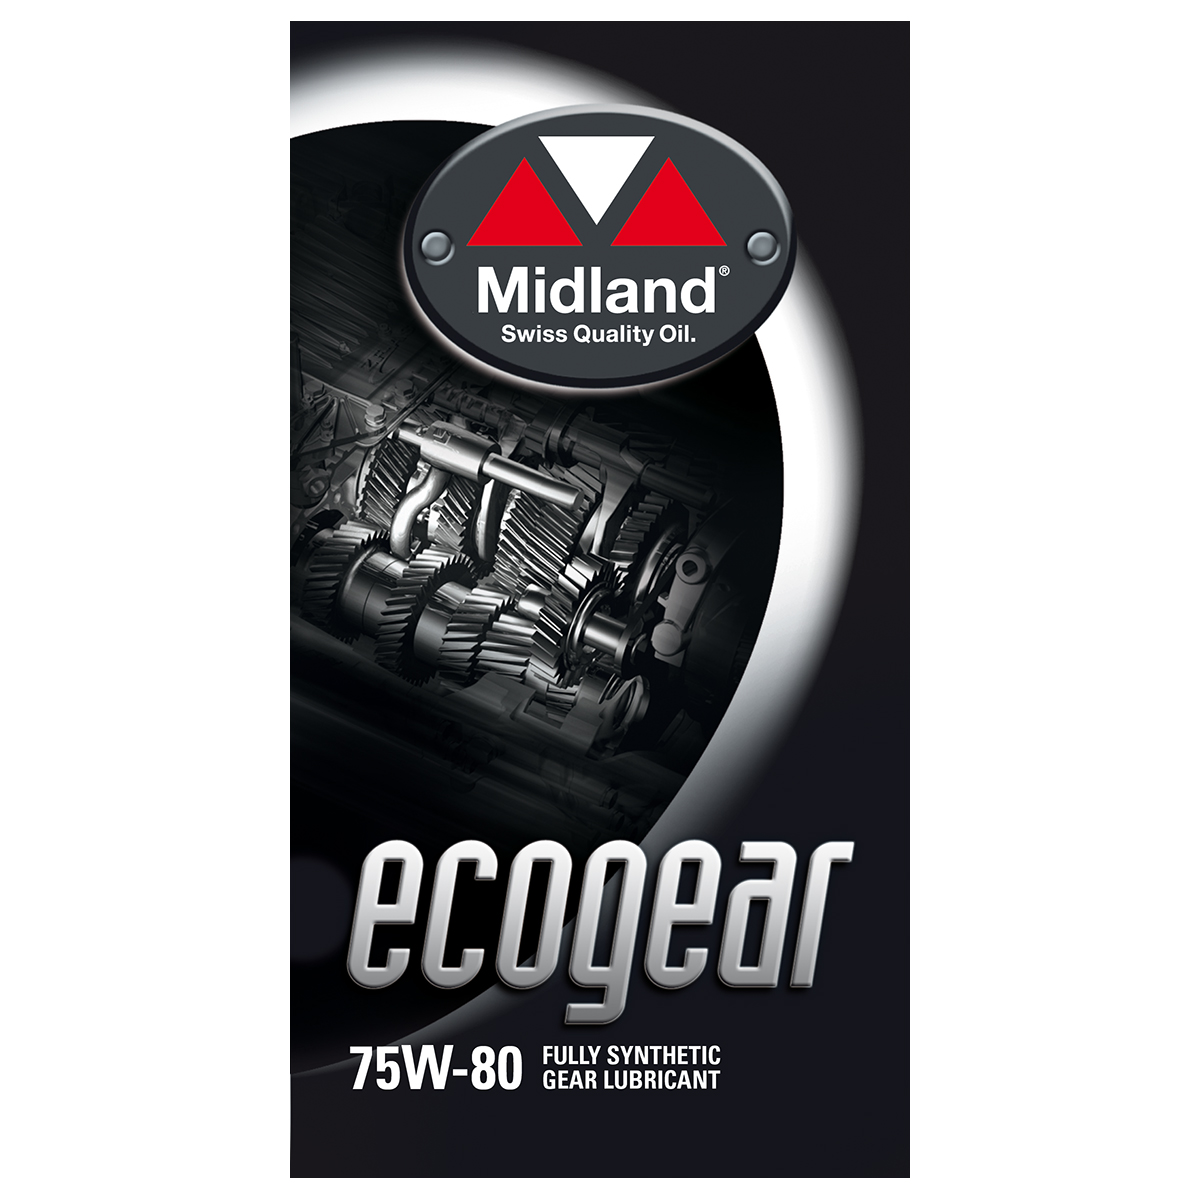 Ecogear 75W-80